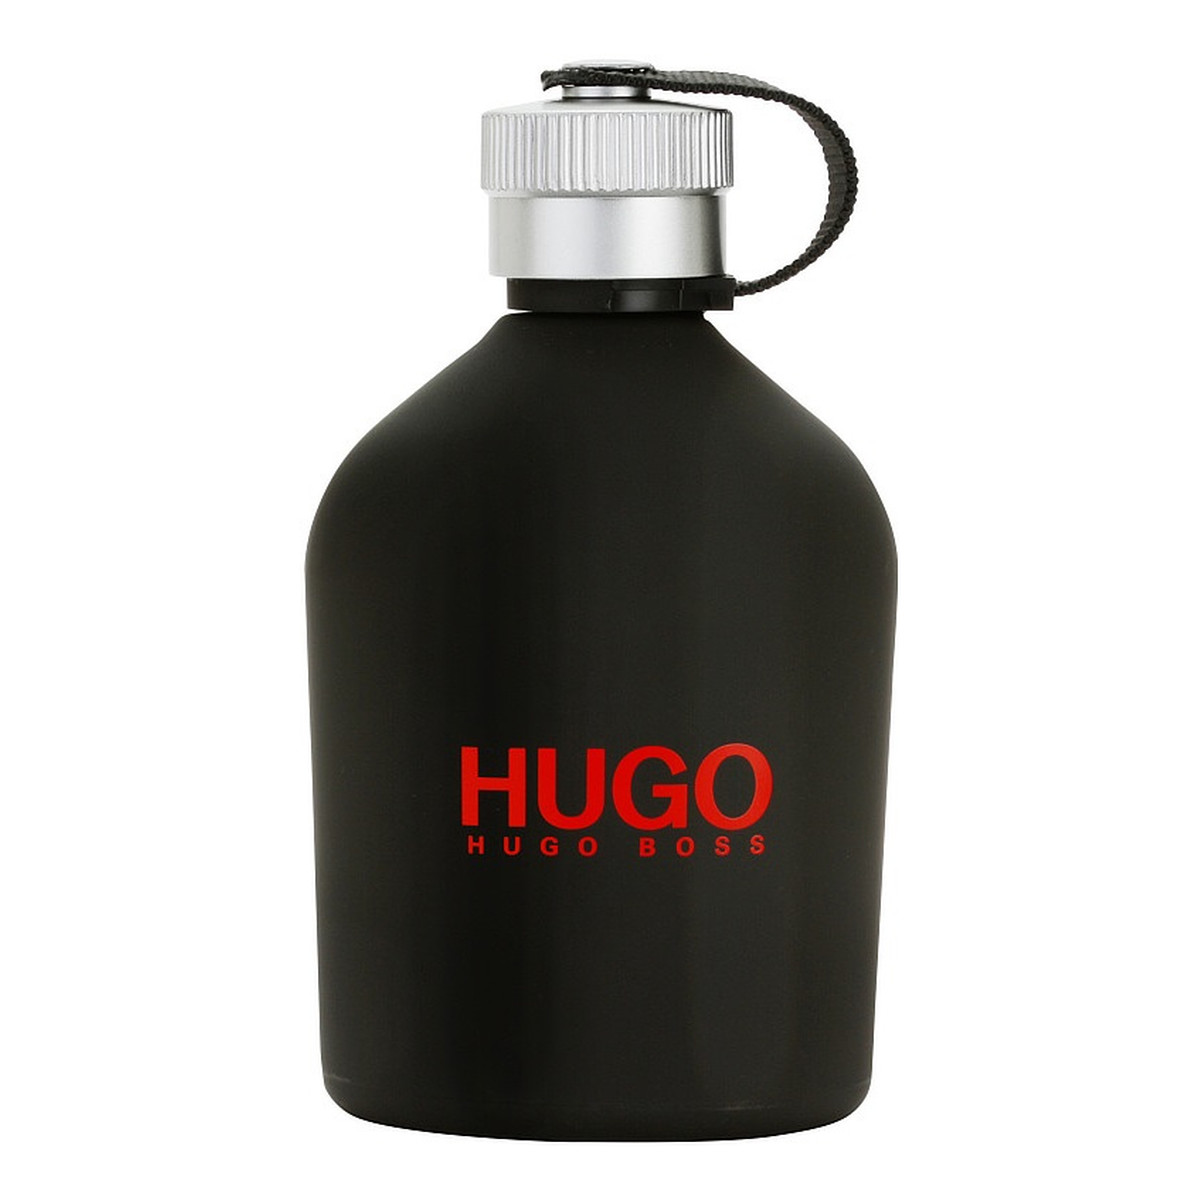 Hugo Boss Hugo Just Different Woda toaletowa spray 200ml